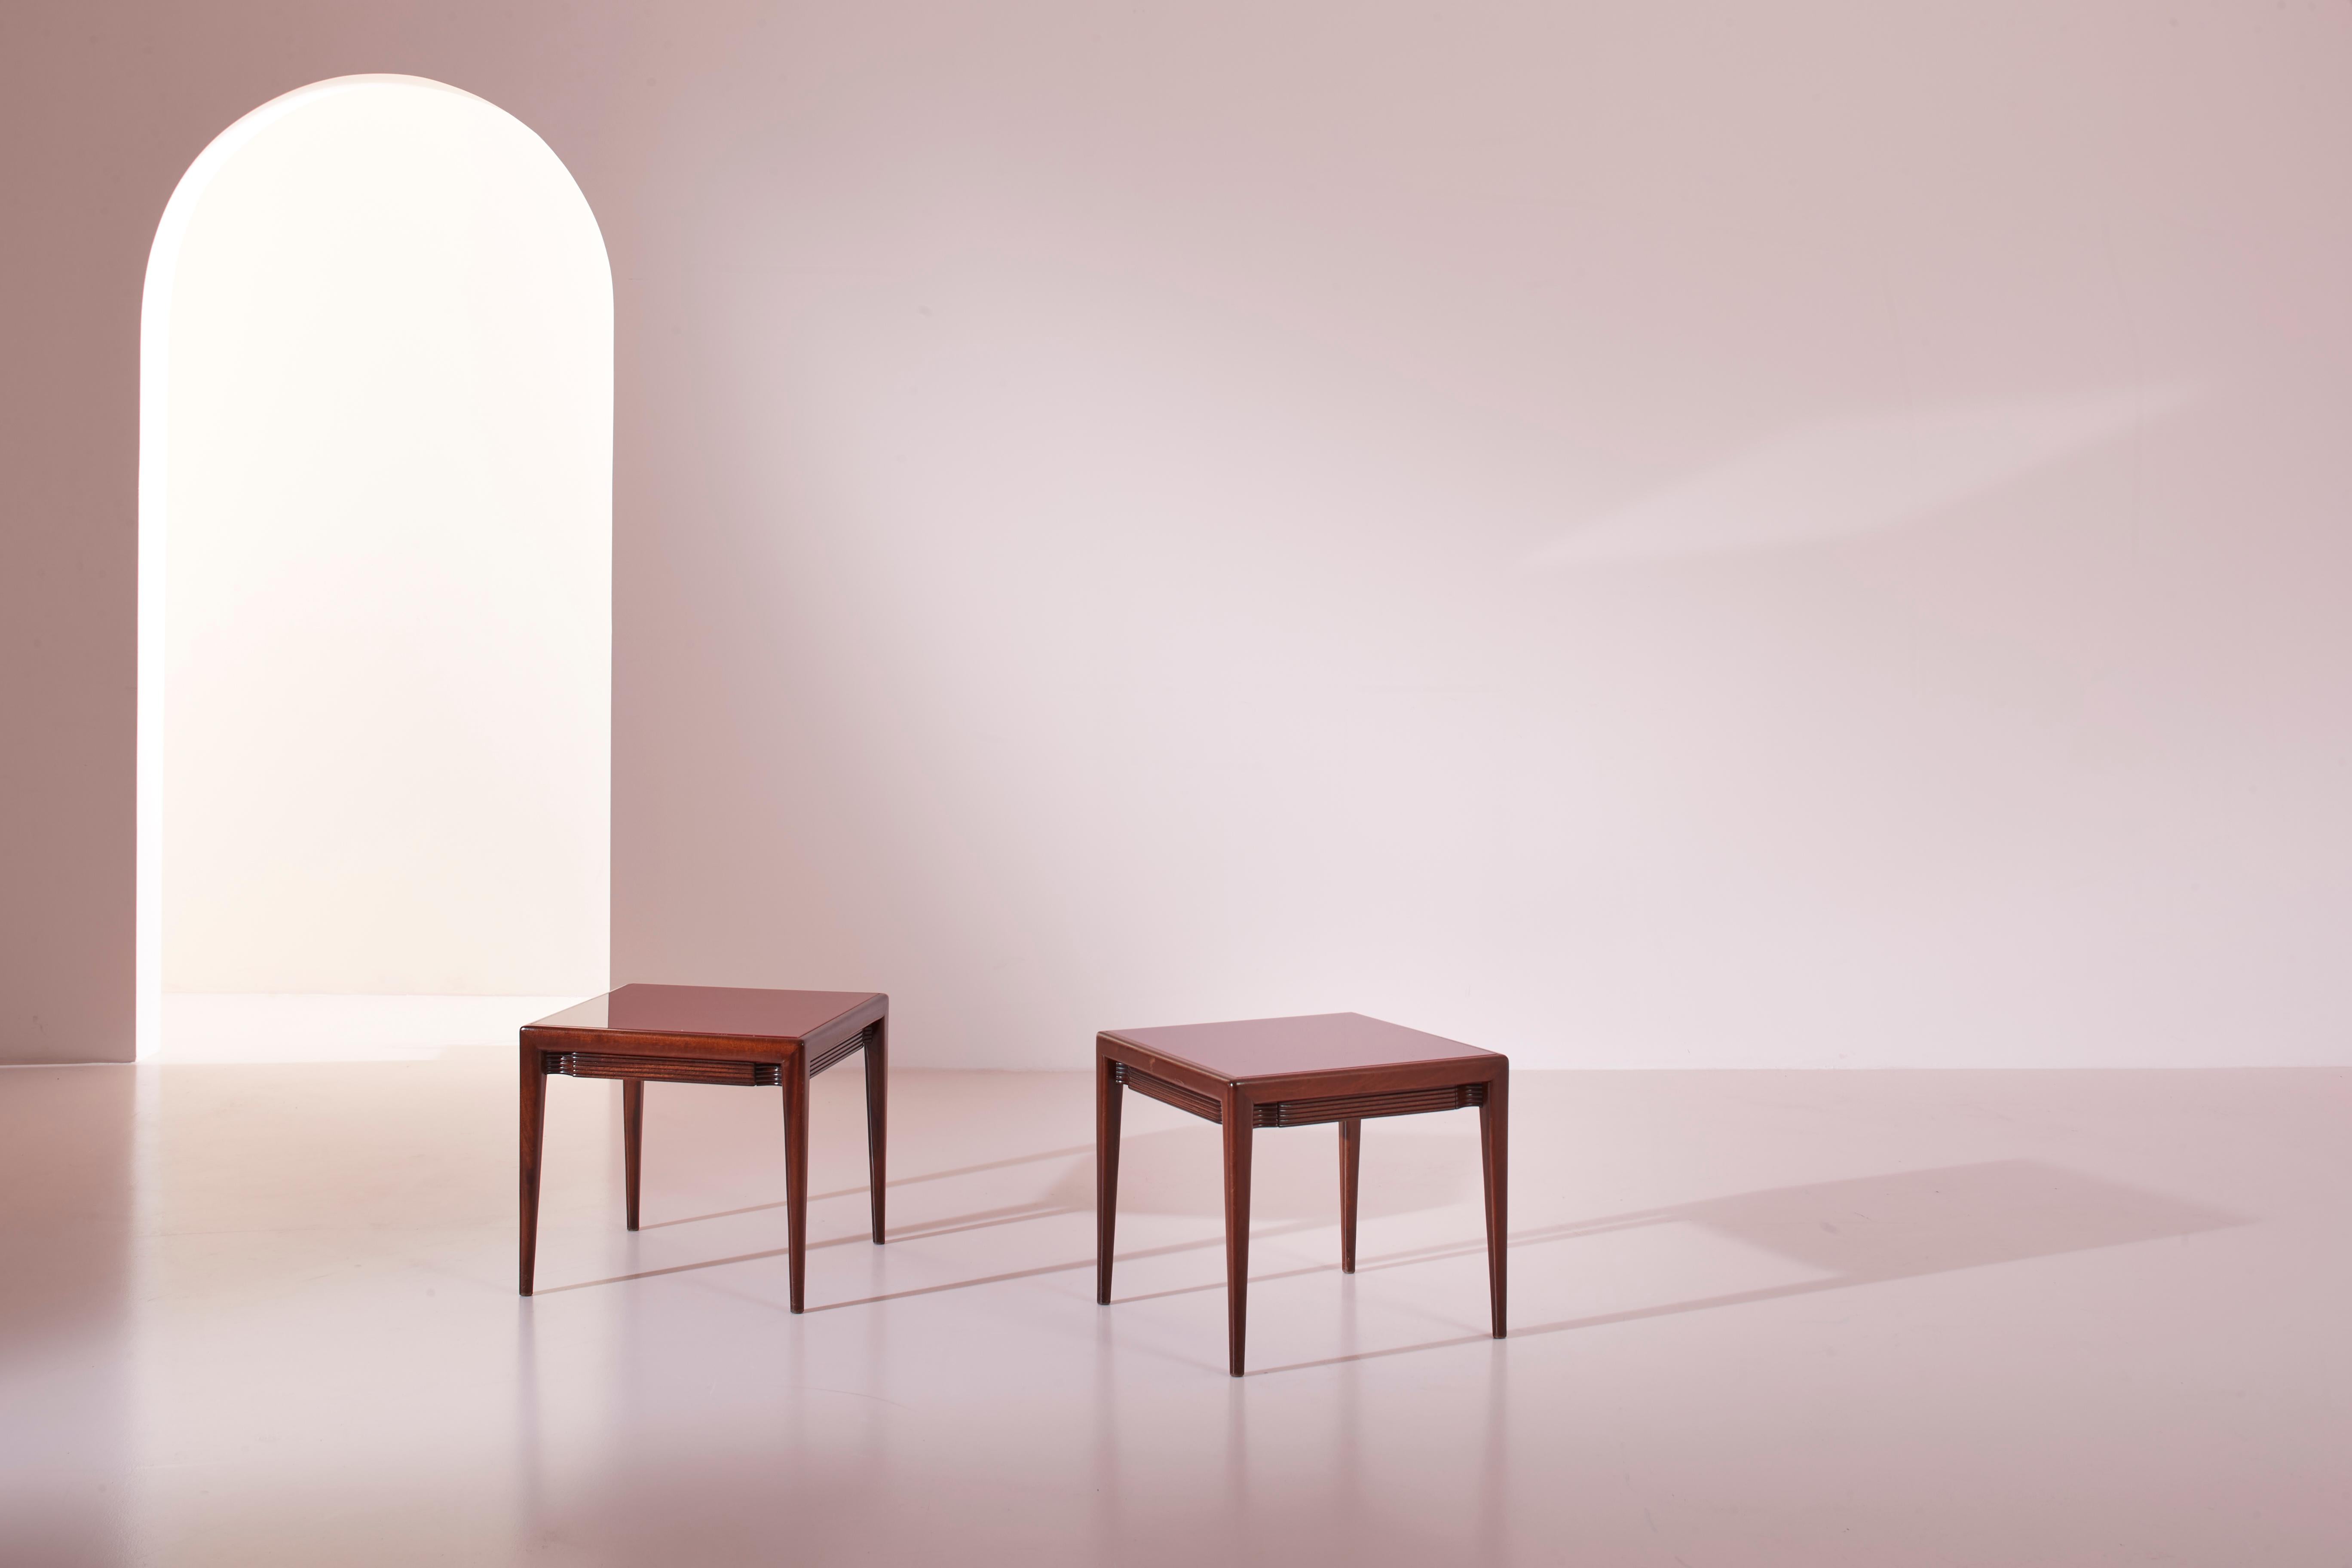 Une belle paire de tables d'appoint en bois et en verre avec un tiroir, produite dans les années 1950 en Italie par Arredamenti Borsani Varedo, et conçue par le célèbre designer Osvaldo Borsani.

Présentées en set, ces tables constituent de